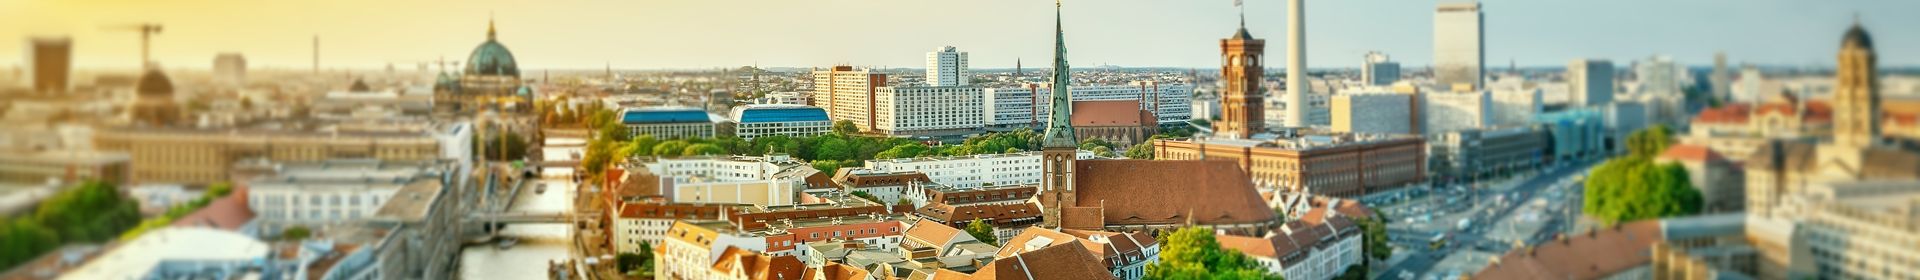 Kaufberatung & Verkaufsberatung für Immobilien in Berlin, Potsdam & Brandenburg